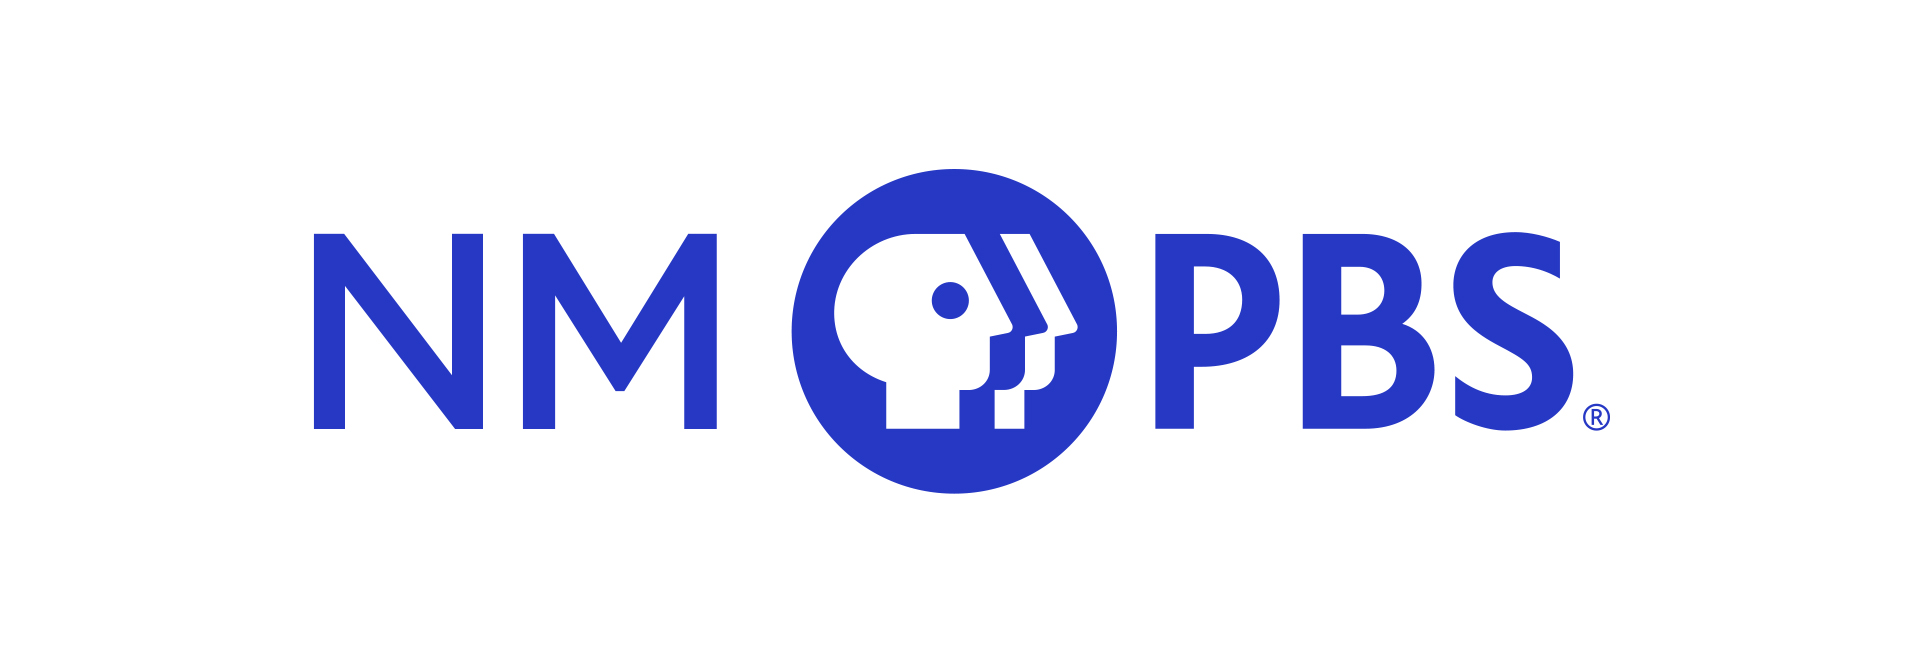 New Mexico PBS logo